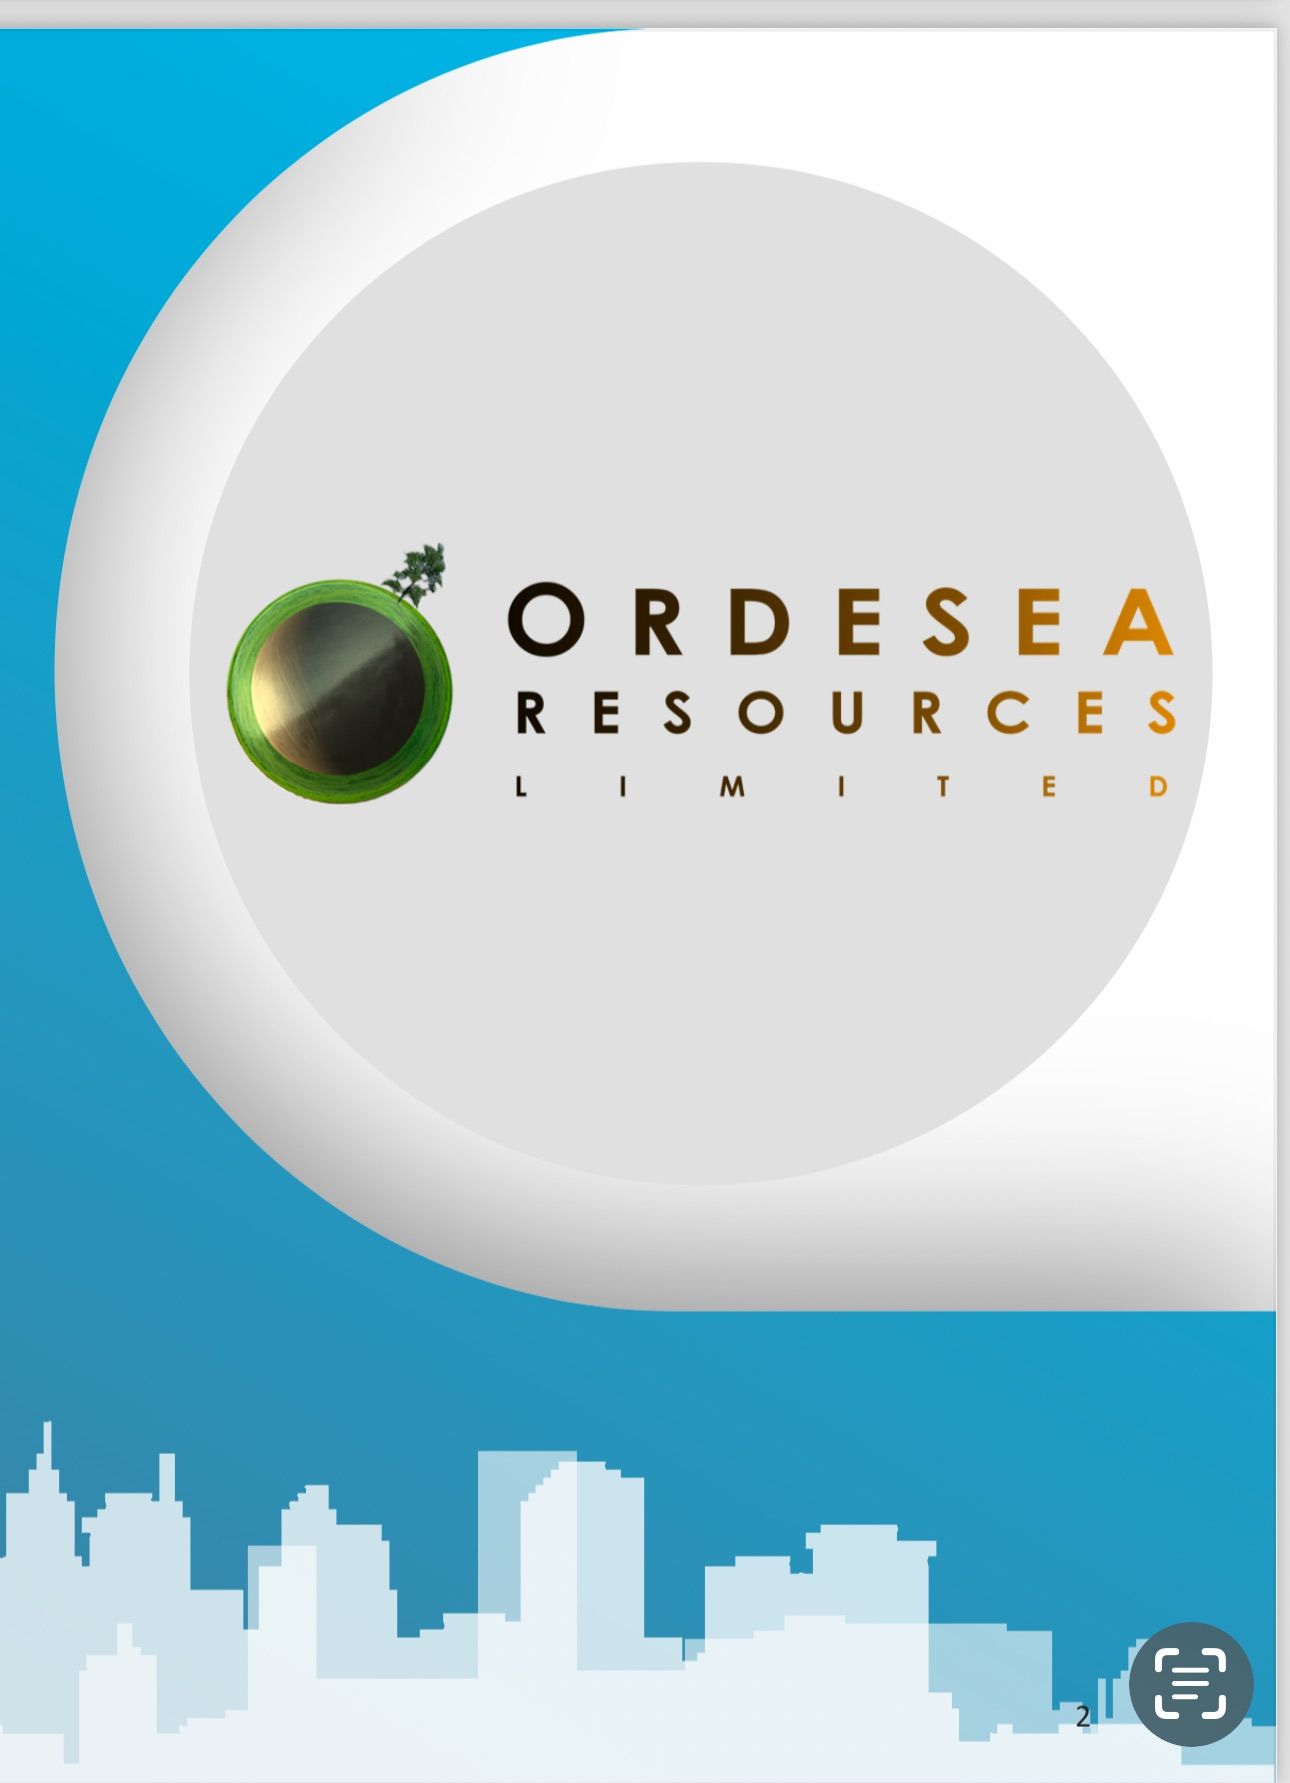 ORDESEA RESOURCES LTD logo